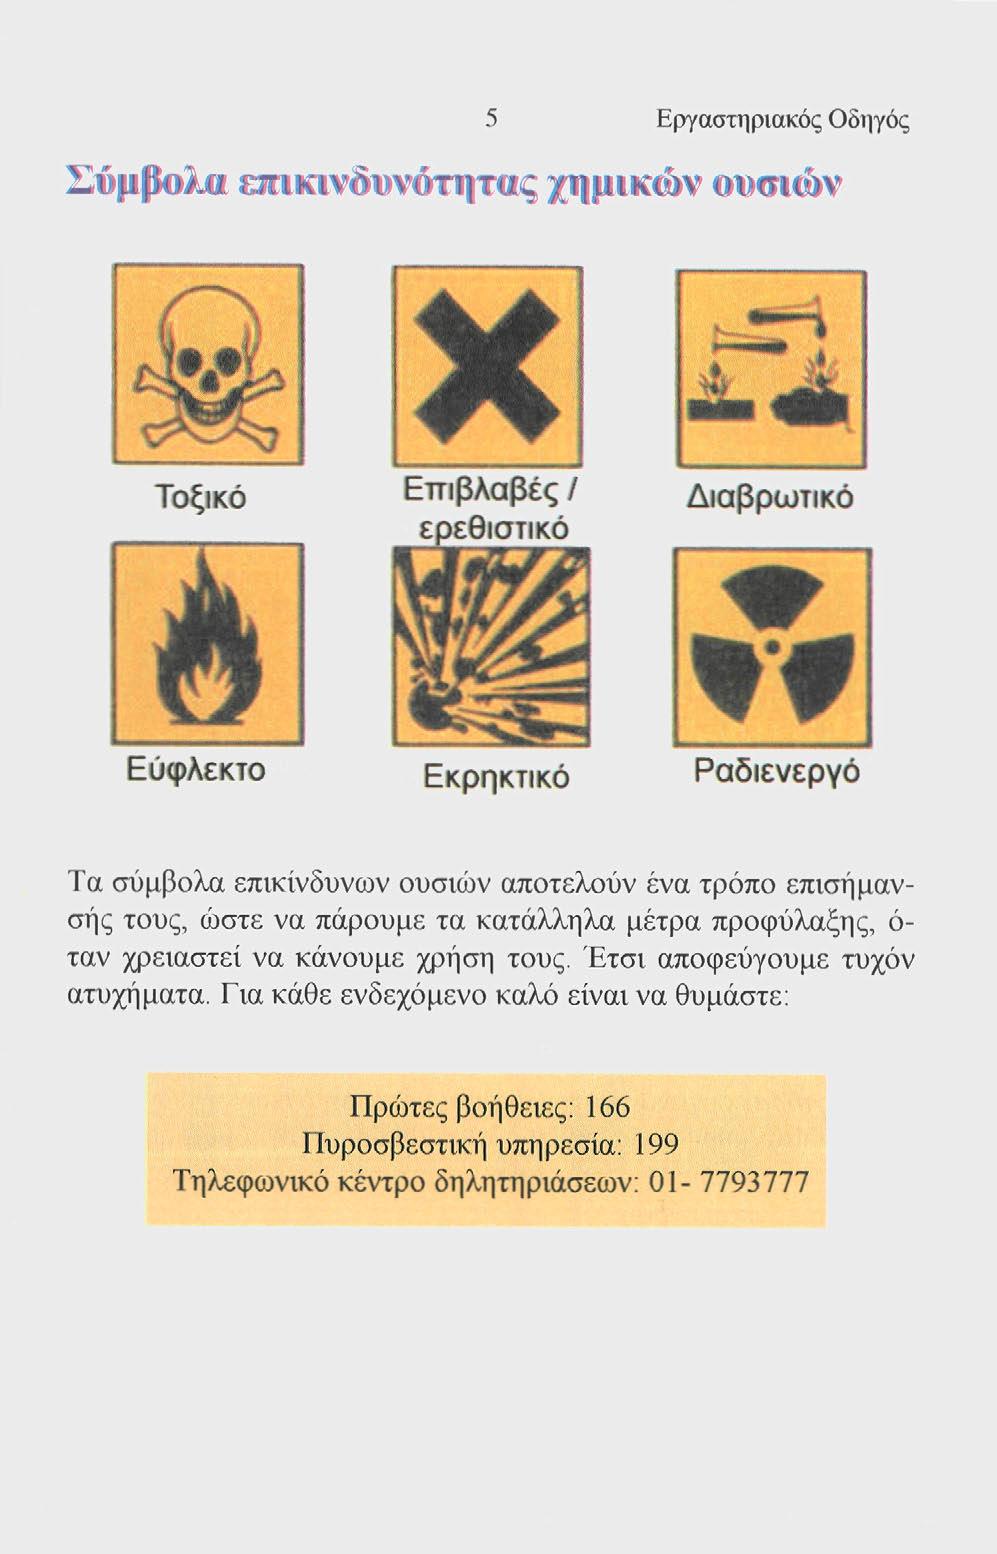 5 Εργαστηριακός Οδηγός Σύμβολα επικινδυνότητας χημικών ουσιών Τοξικό Επιβλαβές / ερεθιστικό Διαβρωτικό Εύφλεκτο Εκρηκτικό Ραδιενεργό Τα σύμβολα επικίνδυνων ουσιών αποτελούν ένα τρόπο επισήμανσης